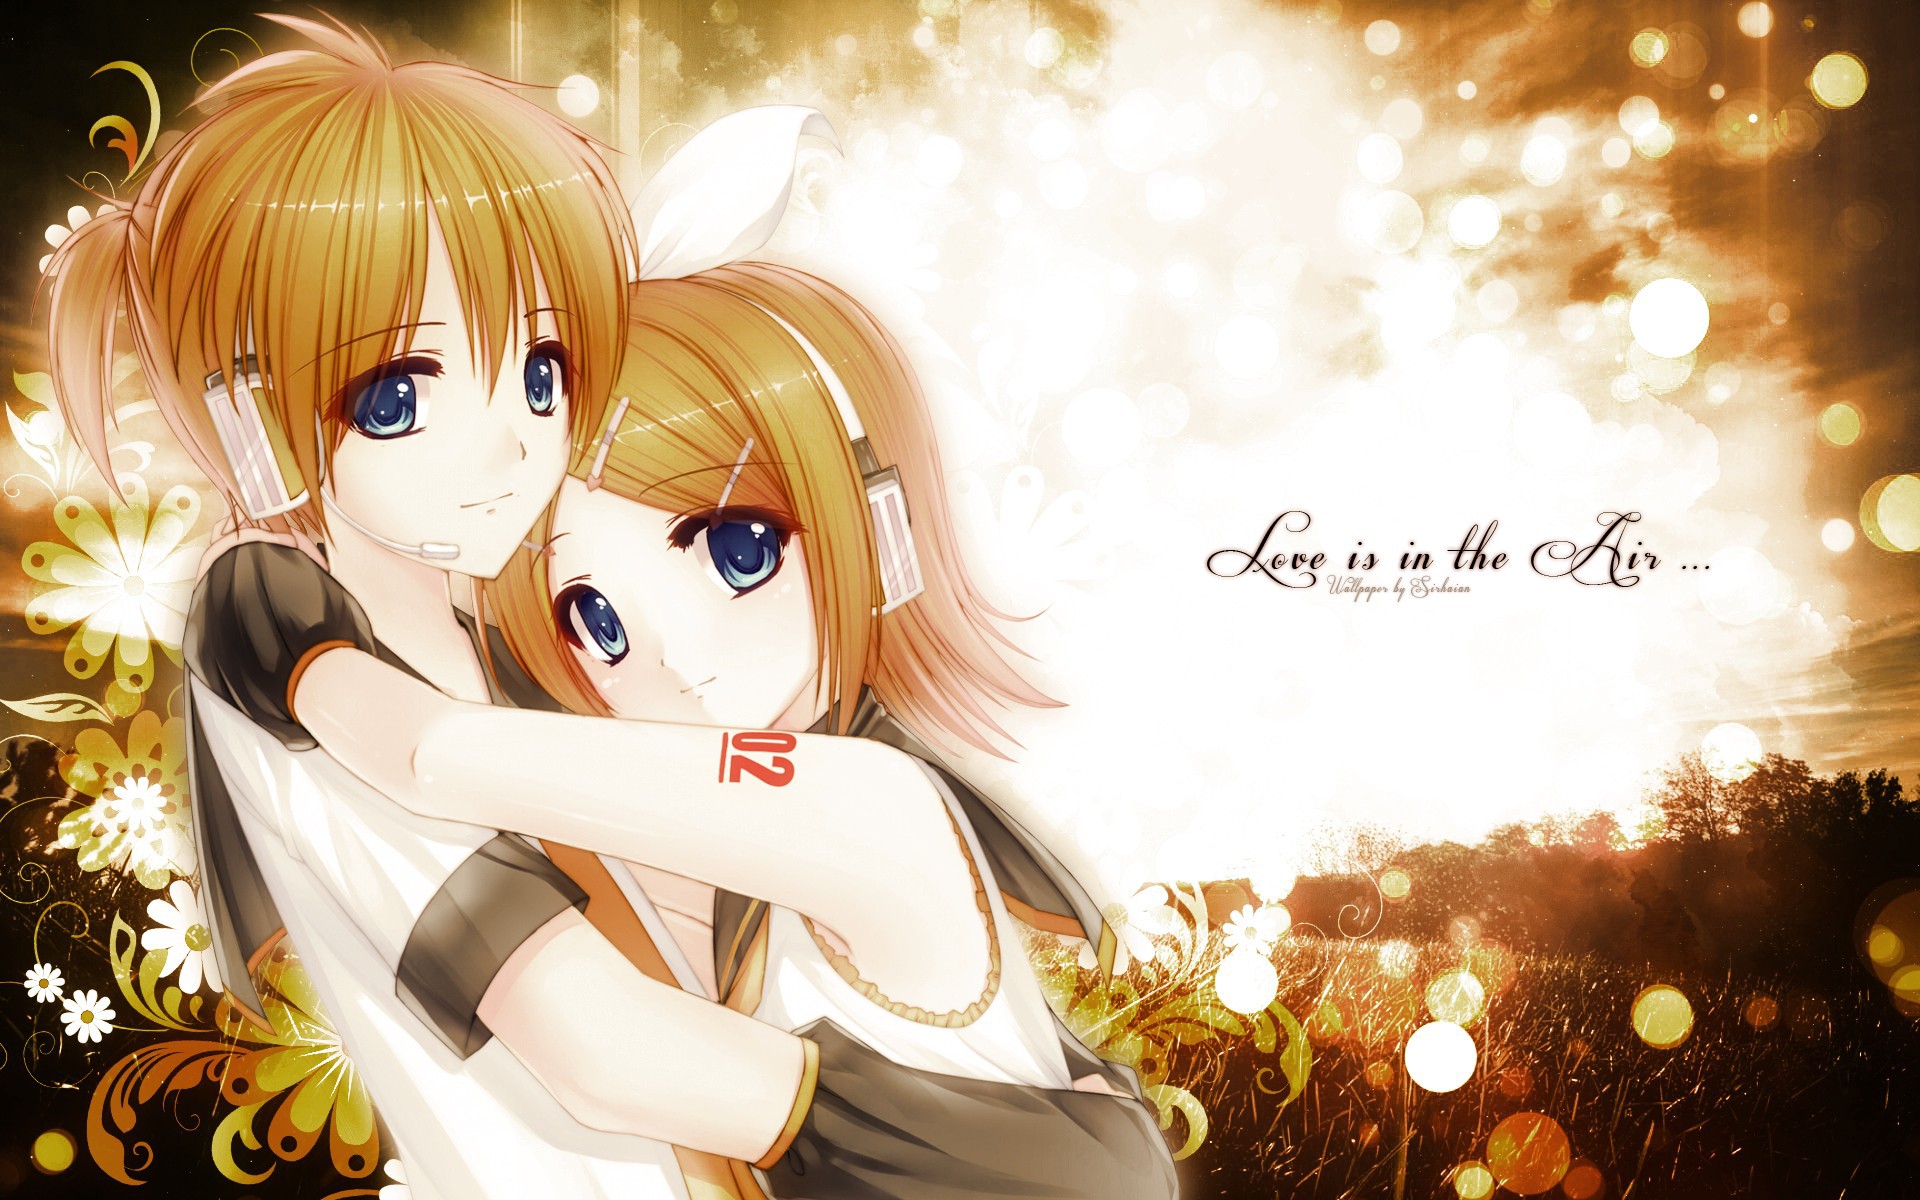 Gallery For Gt Anime Love Hug Wallpaper